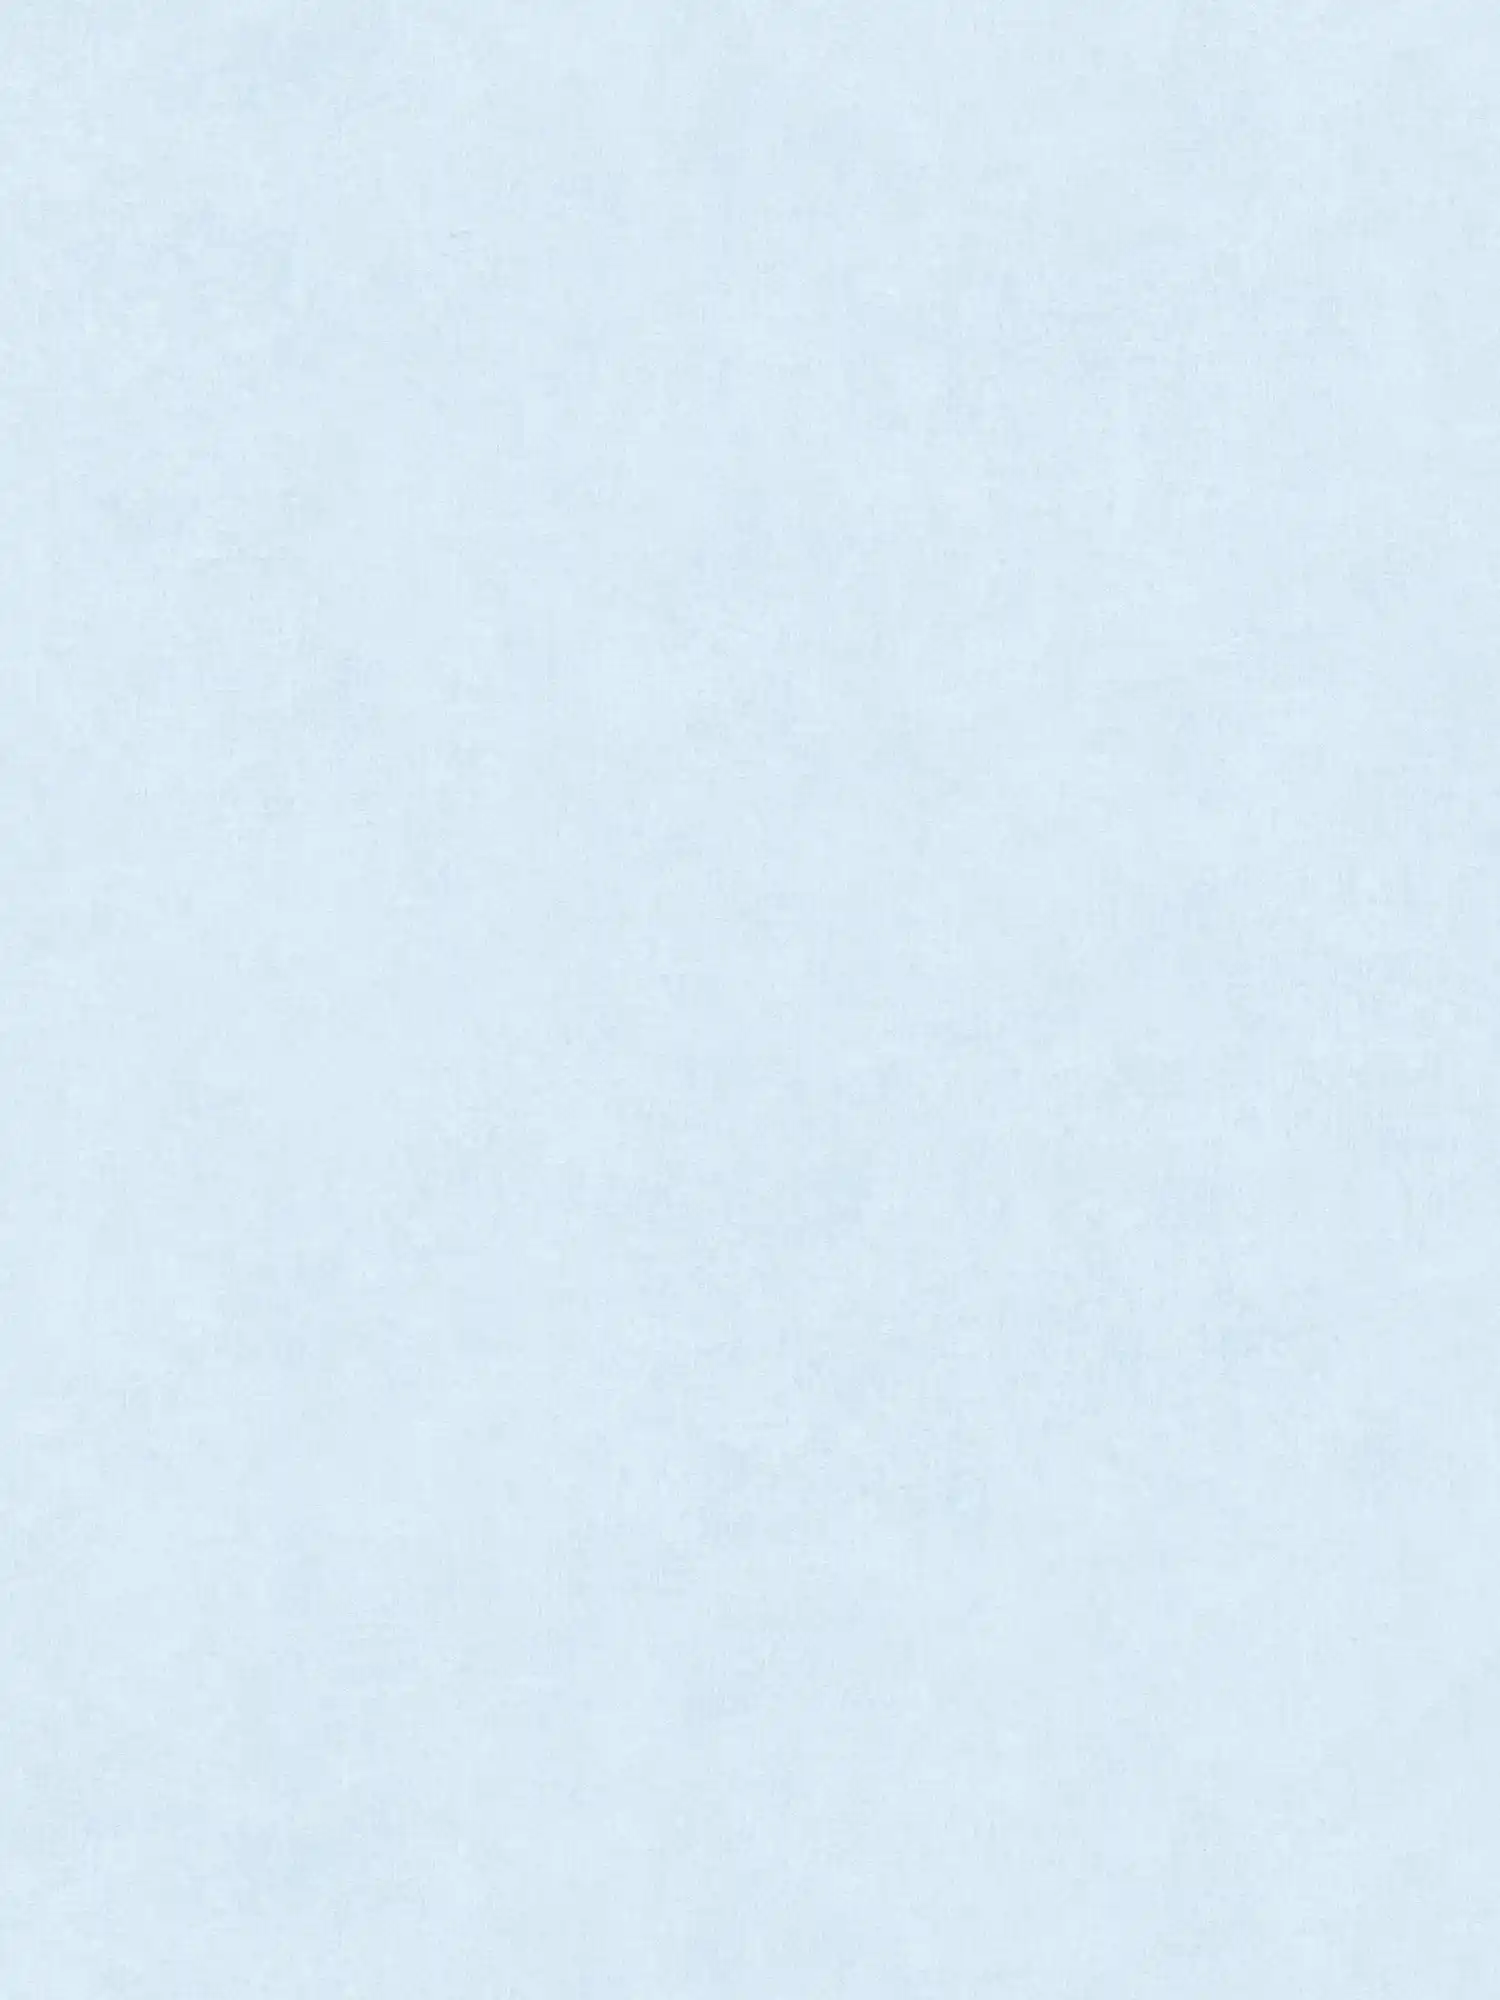 Eenheidsbehang met subtiel kleurenpatroon in used look - wit, blauw
